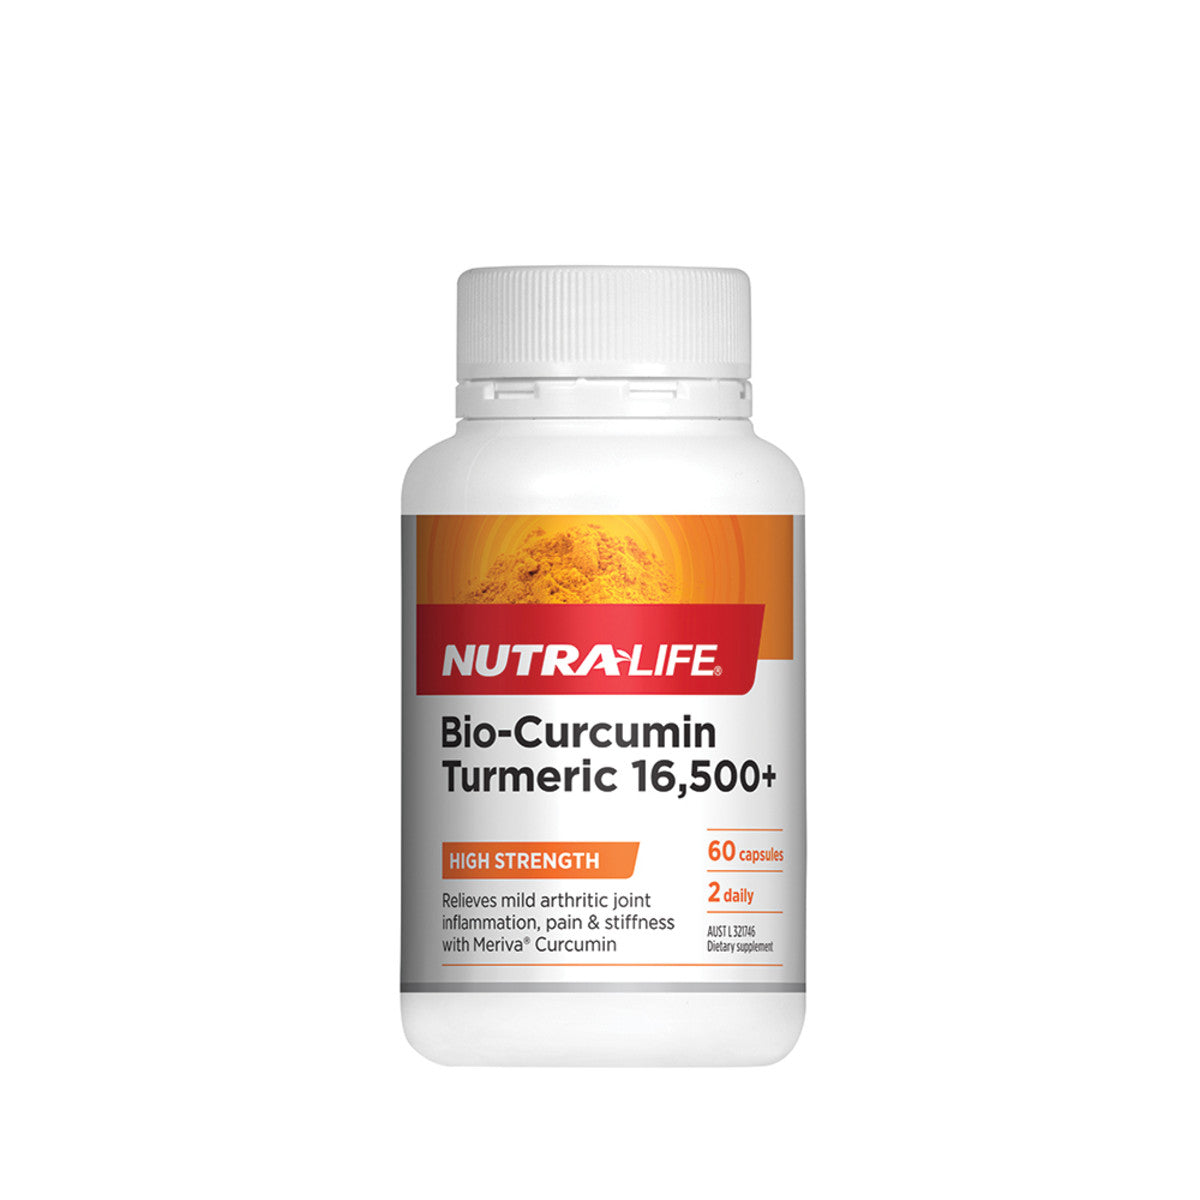 NutraLife - Bio-Curcumin Turmeric 16,500+